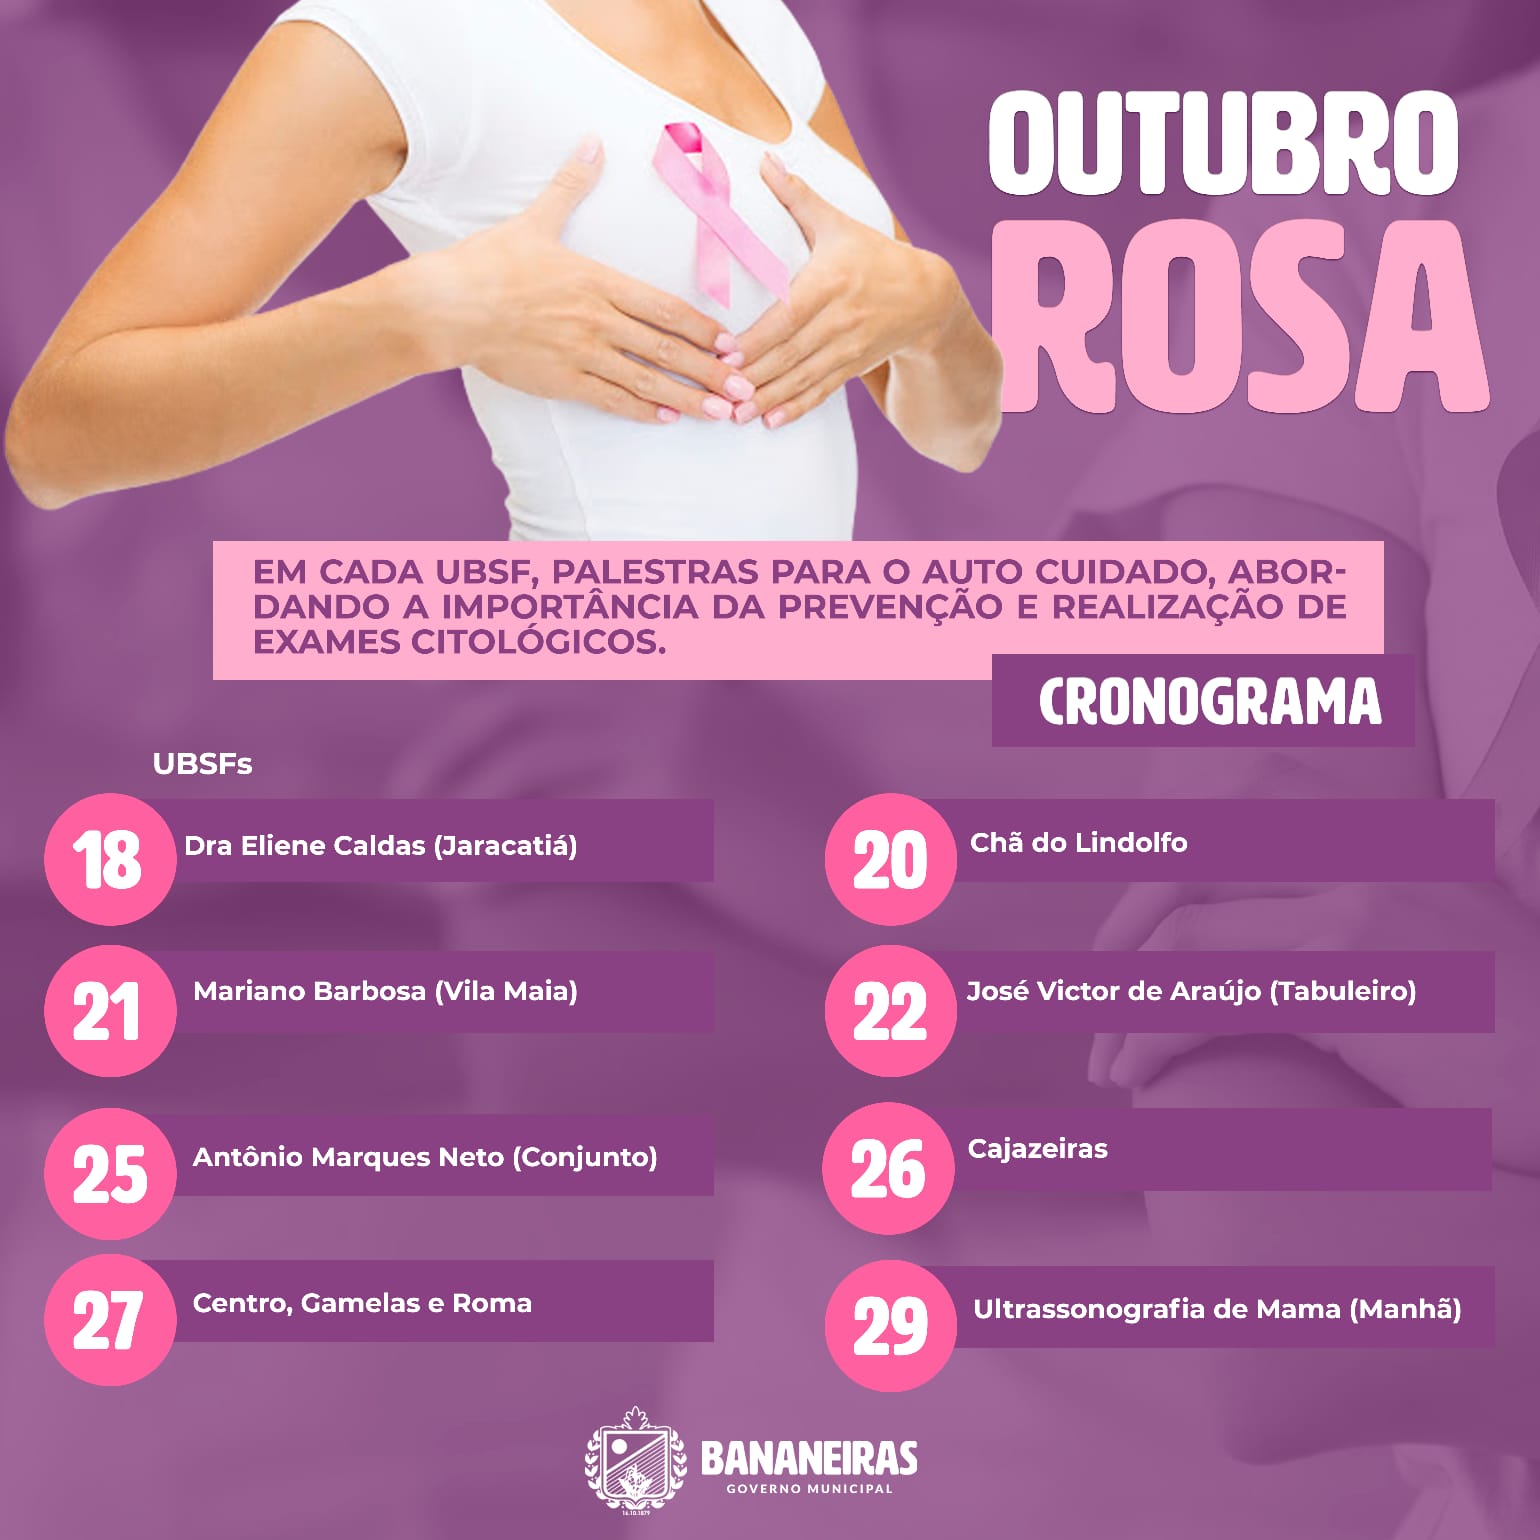 Iniciada a programação das palestras em alusão ao Outubro Rosa nas unidades de saúde do município